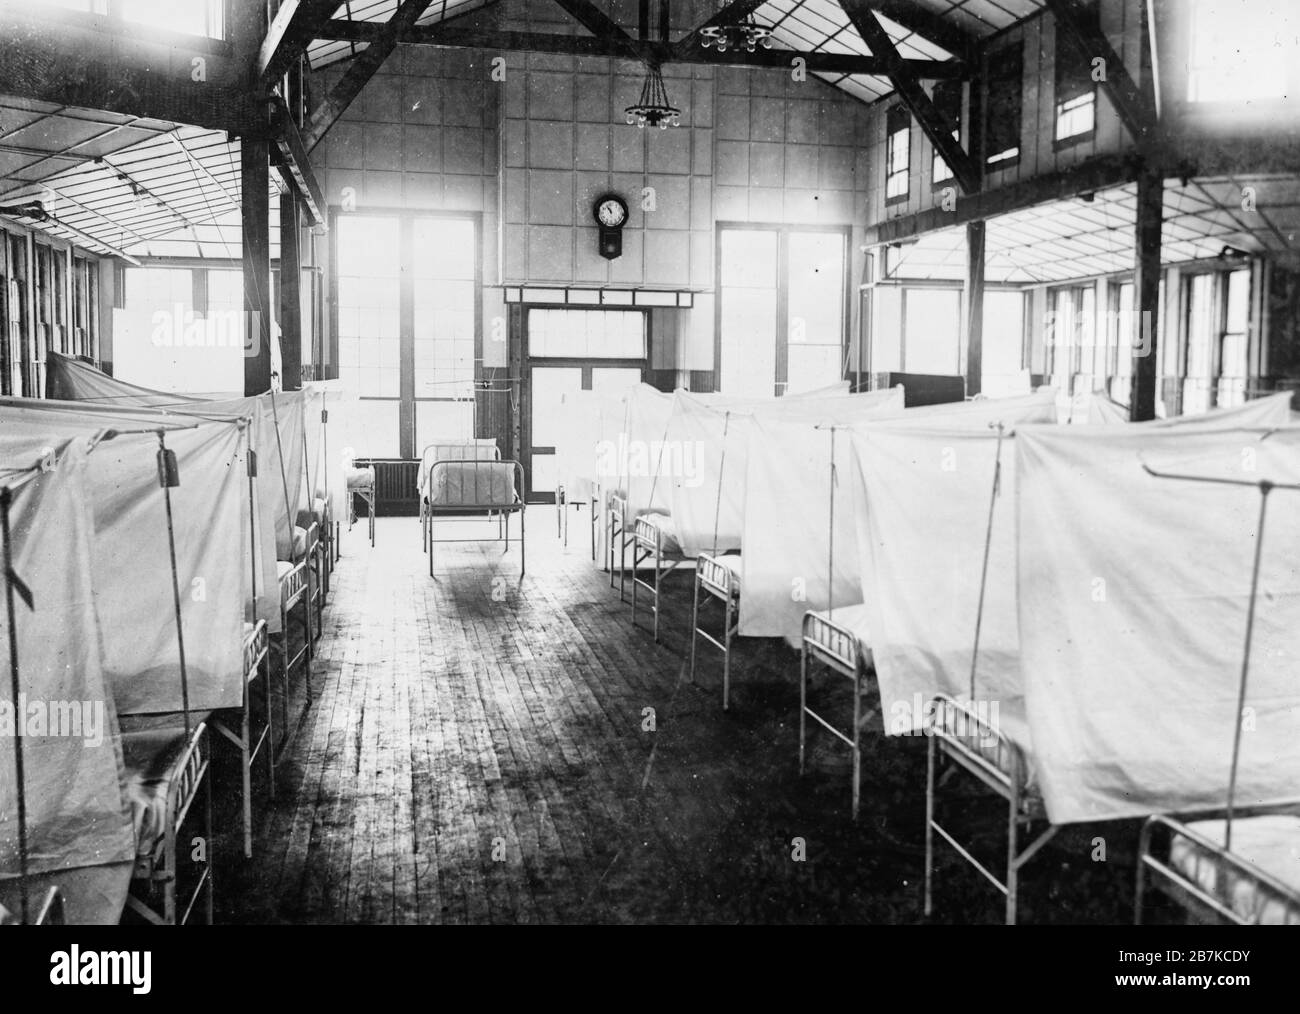 Inneneinrichtung des Red Cross House im US General Hospital #16, New Haven, Conn. Während der Grippeepidemie. Die Betten sind etwa 1918 von Vorhängen isoliert Stockfoto